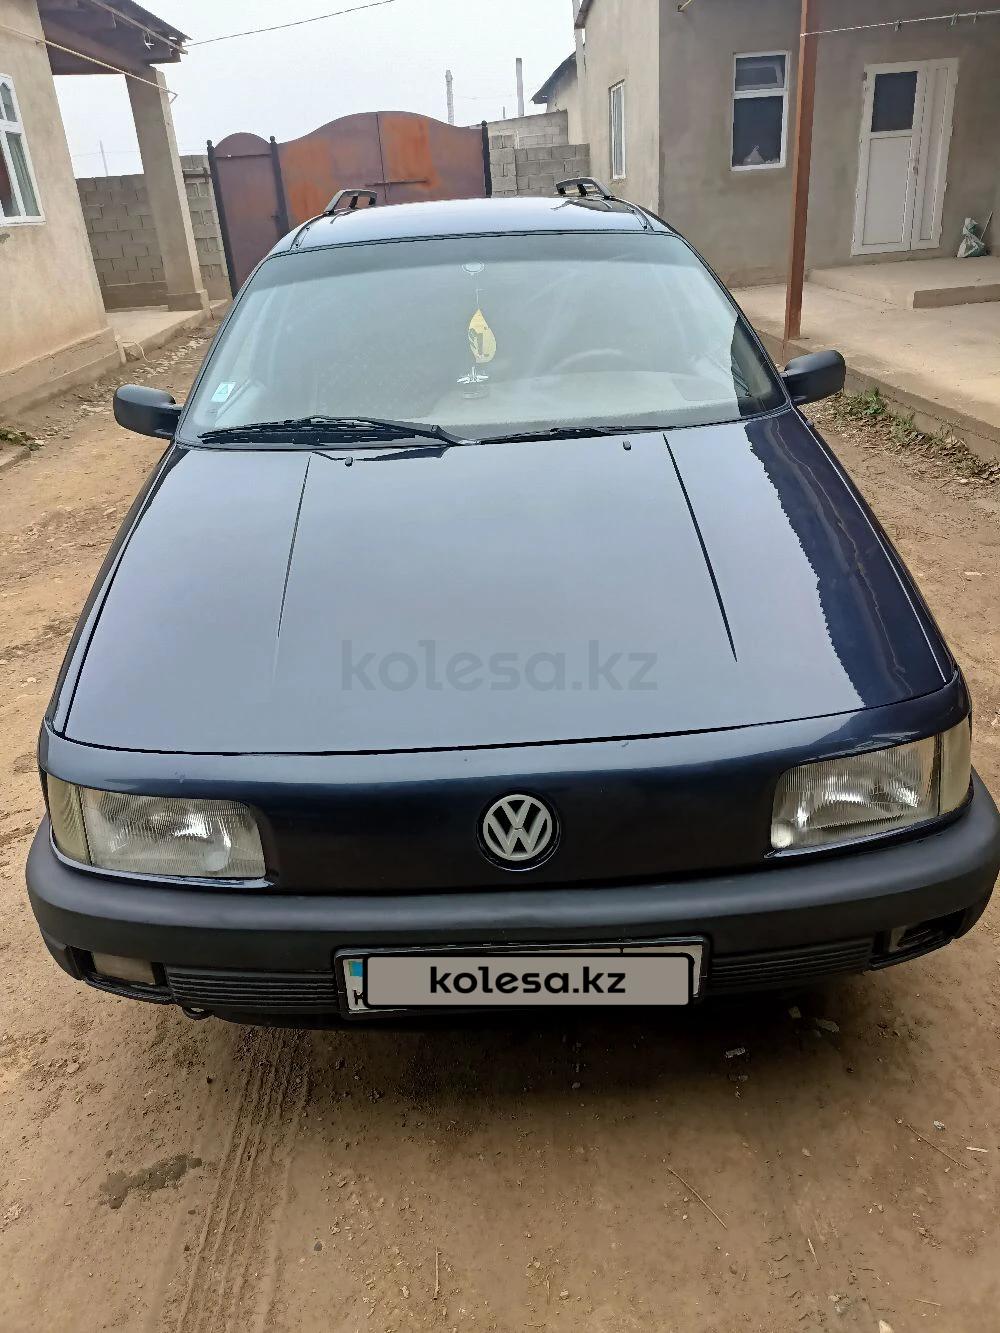 Volkswagen Passat 1992 г.